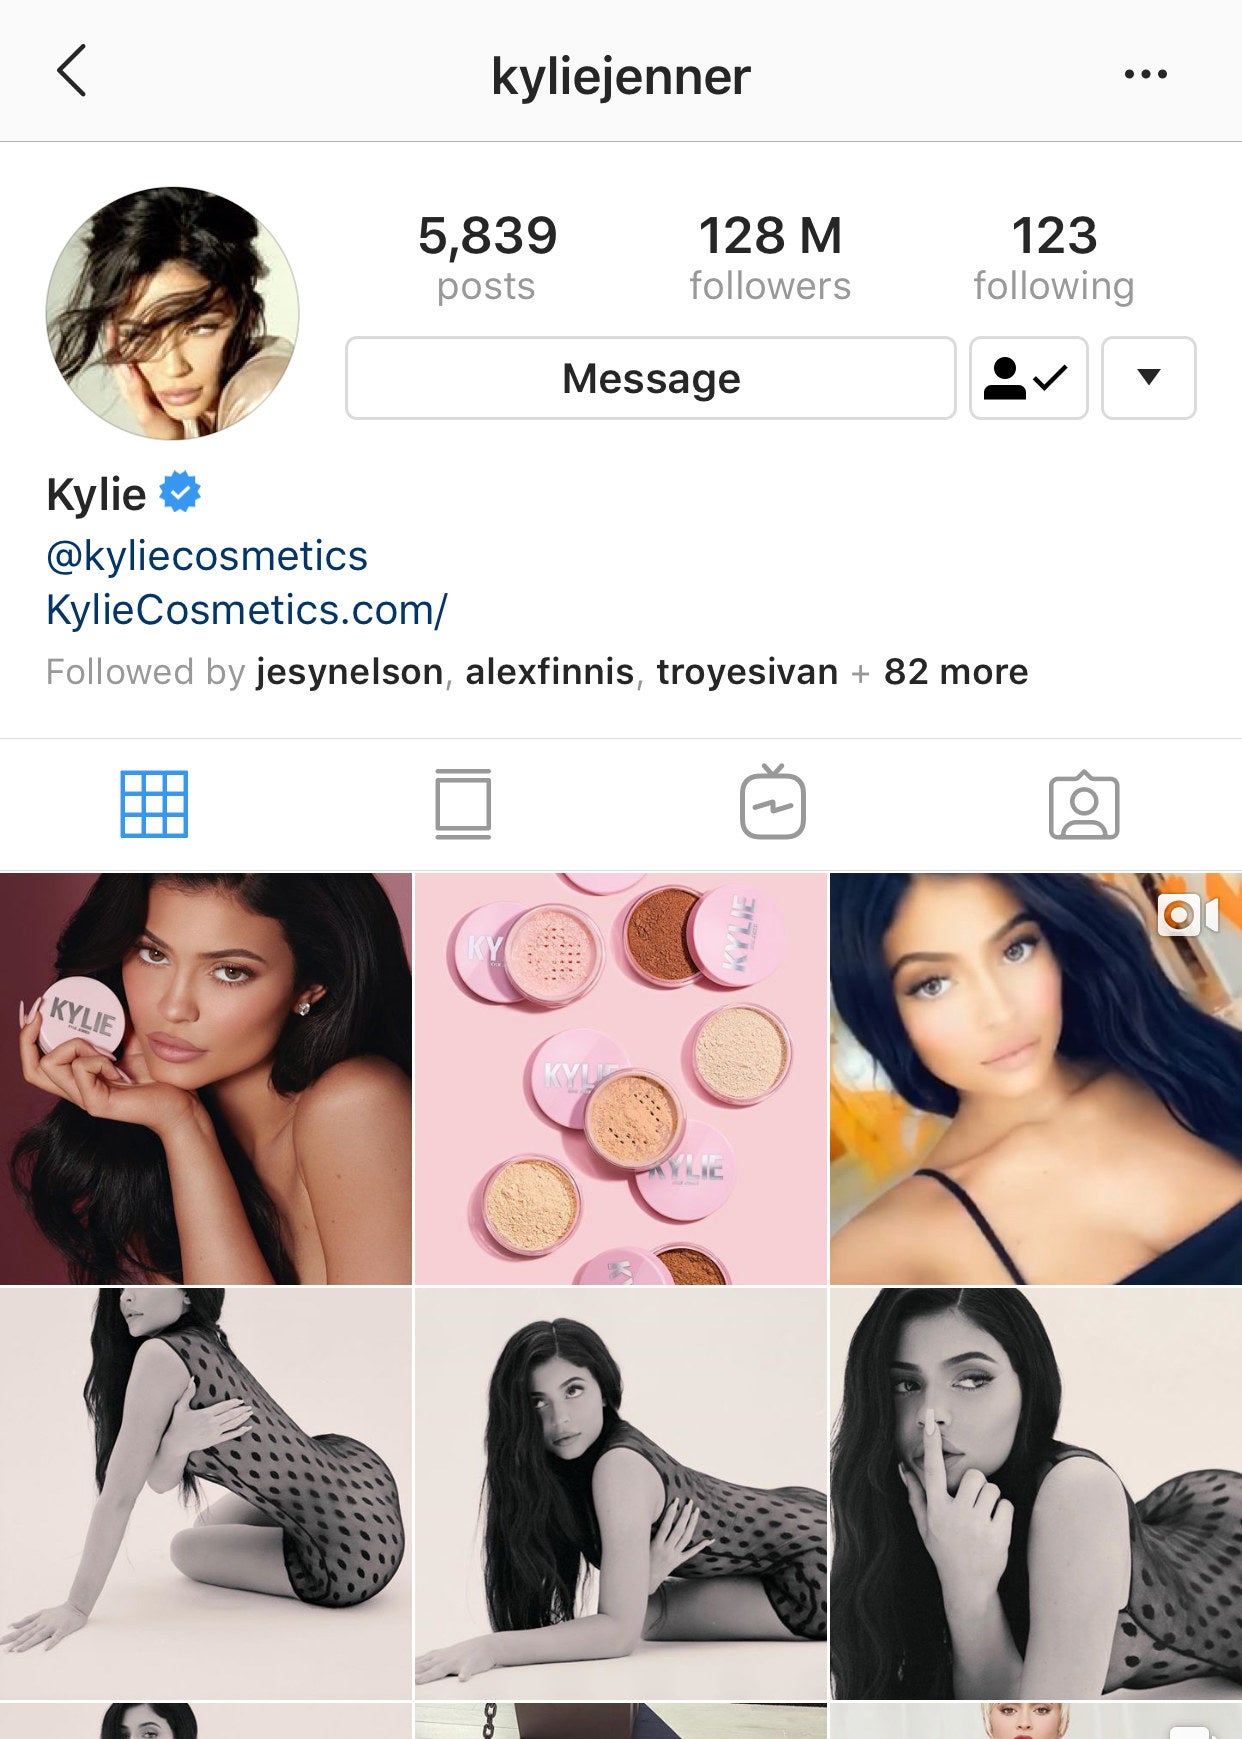 Kylie Jenner Unfollowed Jordyn Woods On Instagram & The Reason Is